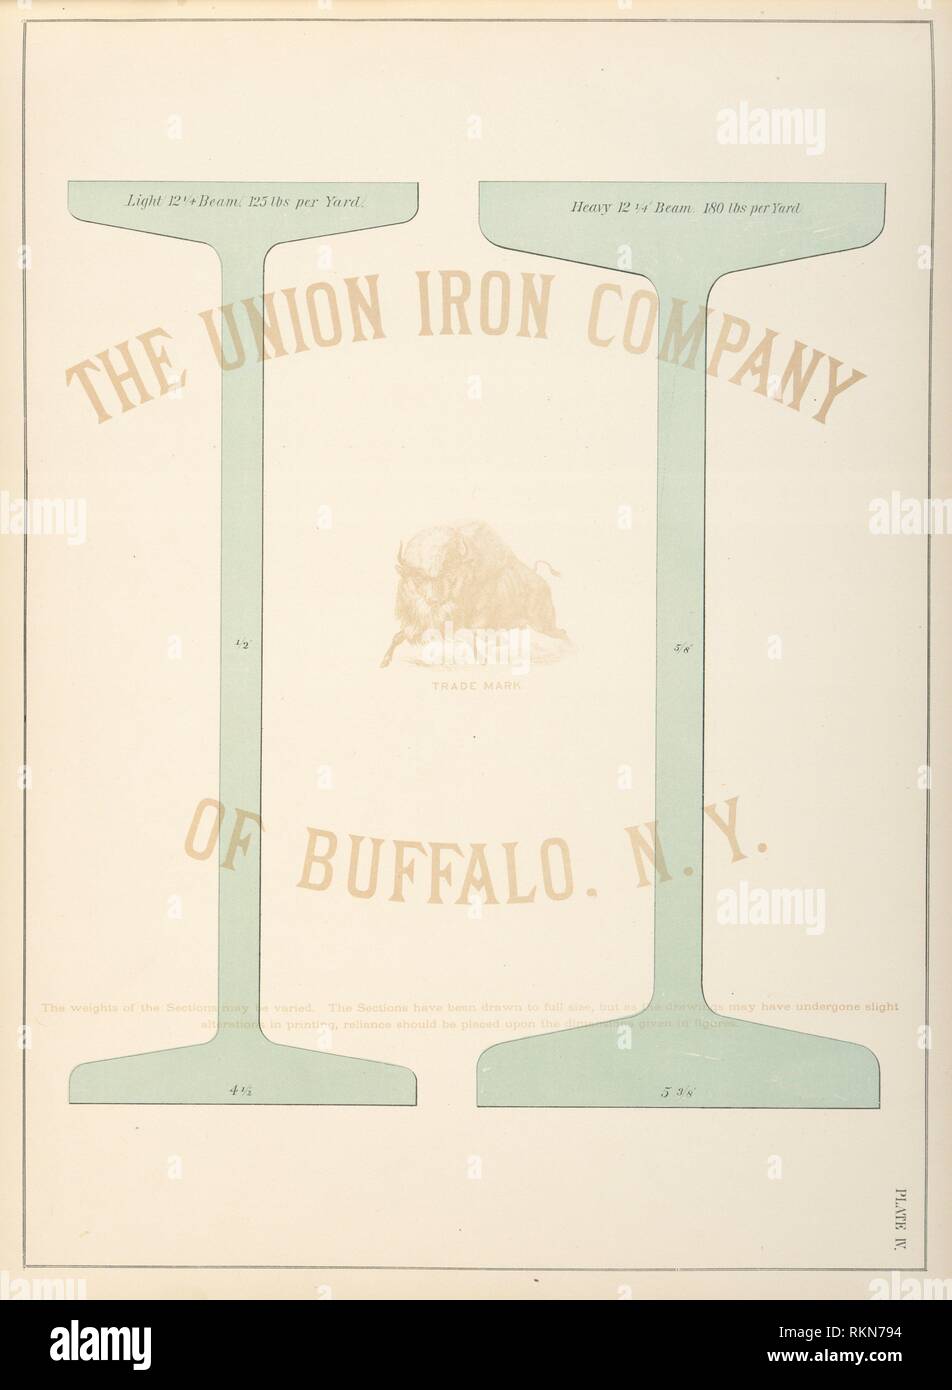 Le travi. Unione Società di ferro (Buffalo, N.Y.) (Autore). Libro di forme [con la descrizione delle opere]. Data di creazione: 1874 Luogo: Buffalo. Fermo immagine. Foto Stock